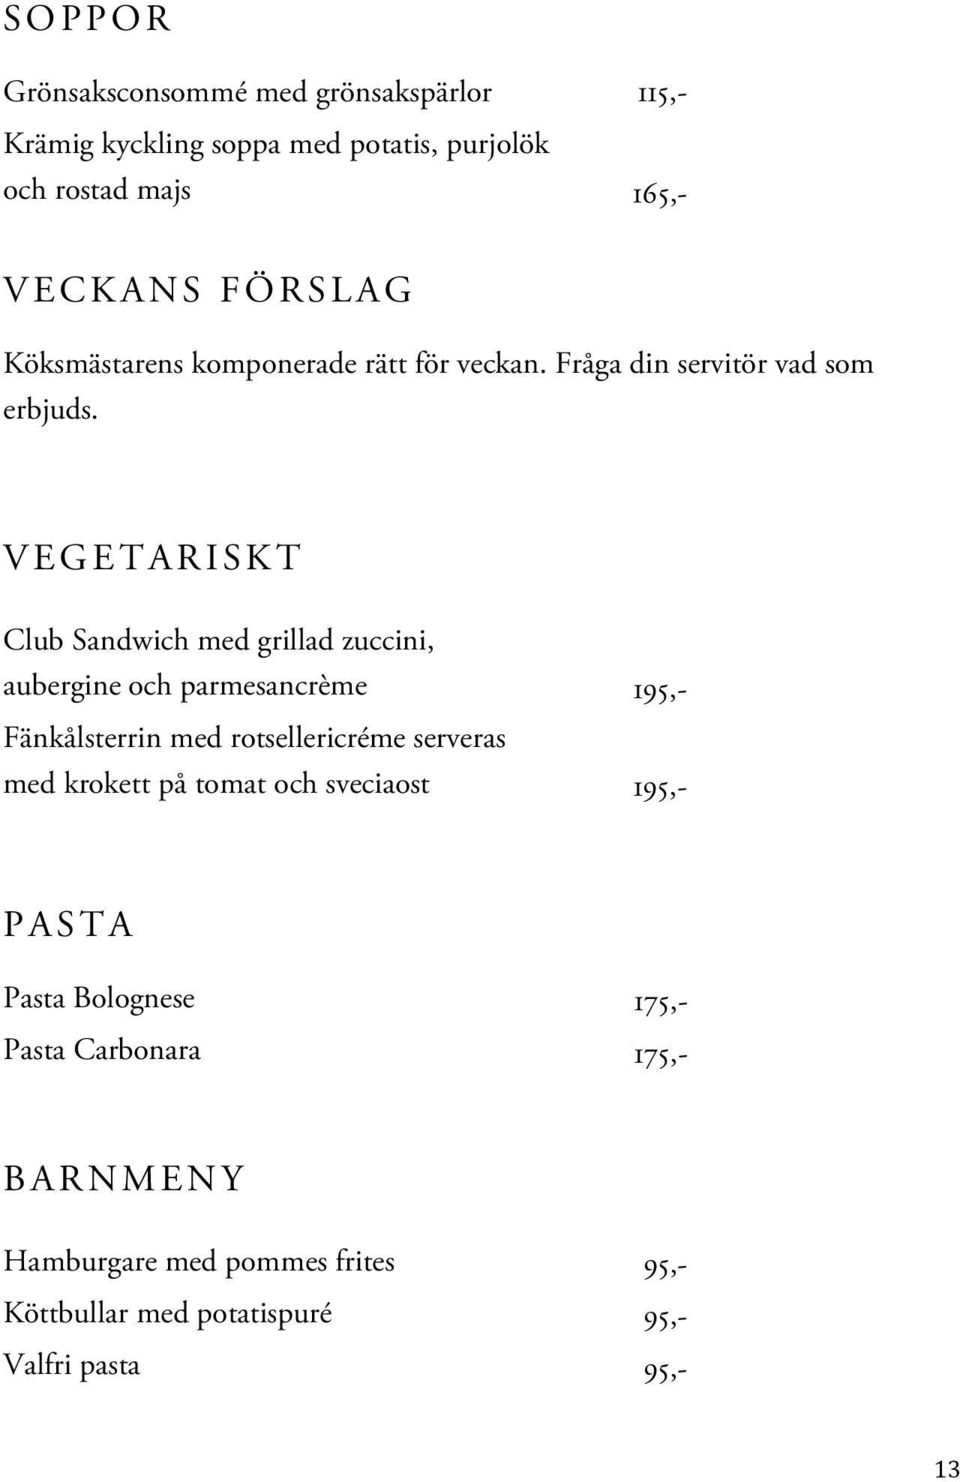 VEGETARISKT Club Sandwich med grillad zuccini, aubergine och parmesancrème 195,- Fänkålsterrin med rotsellericréme serveras med